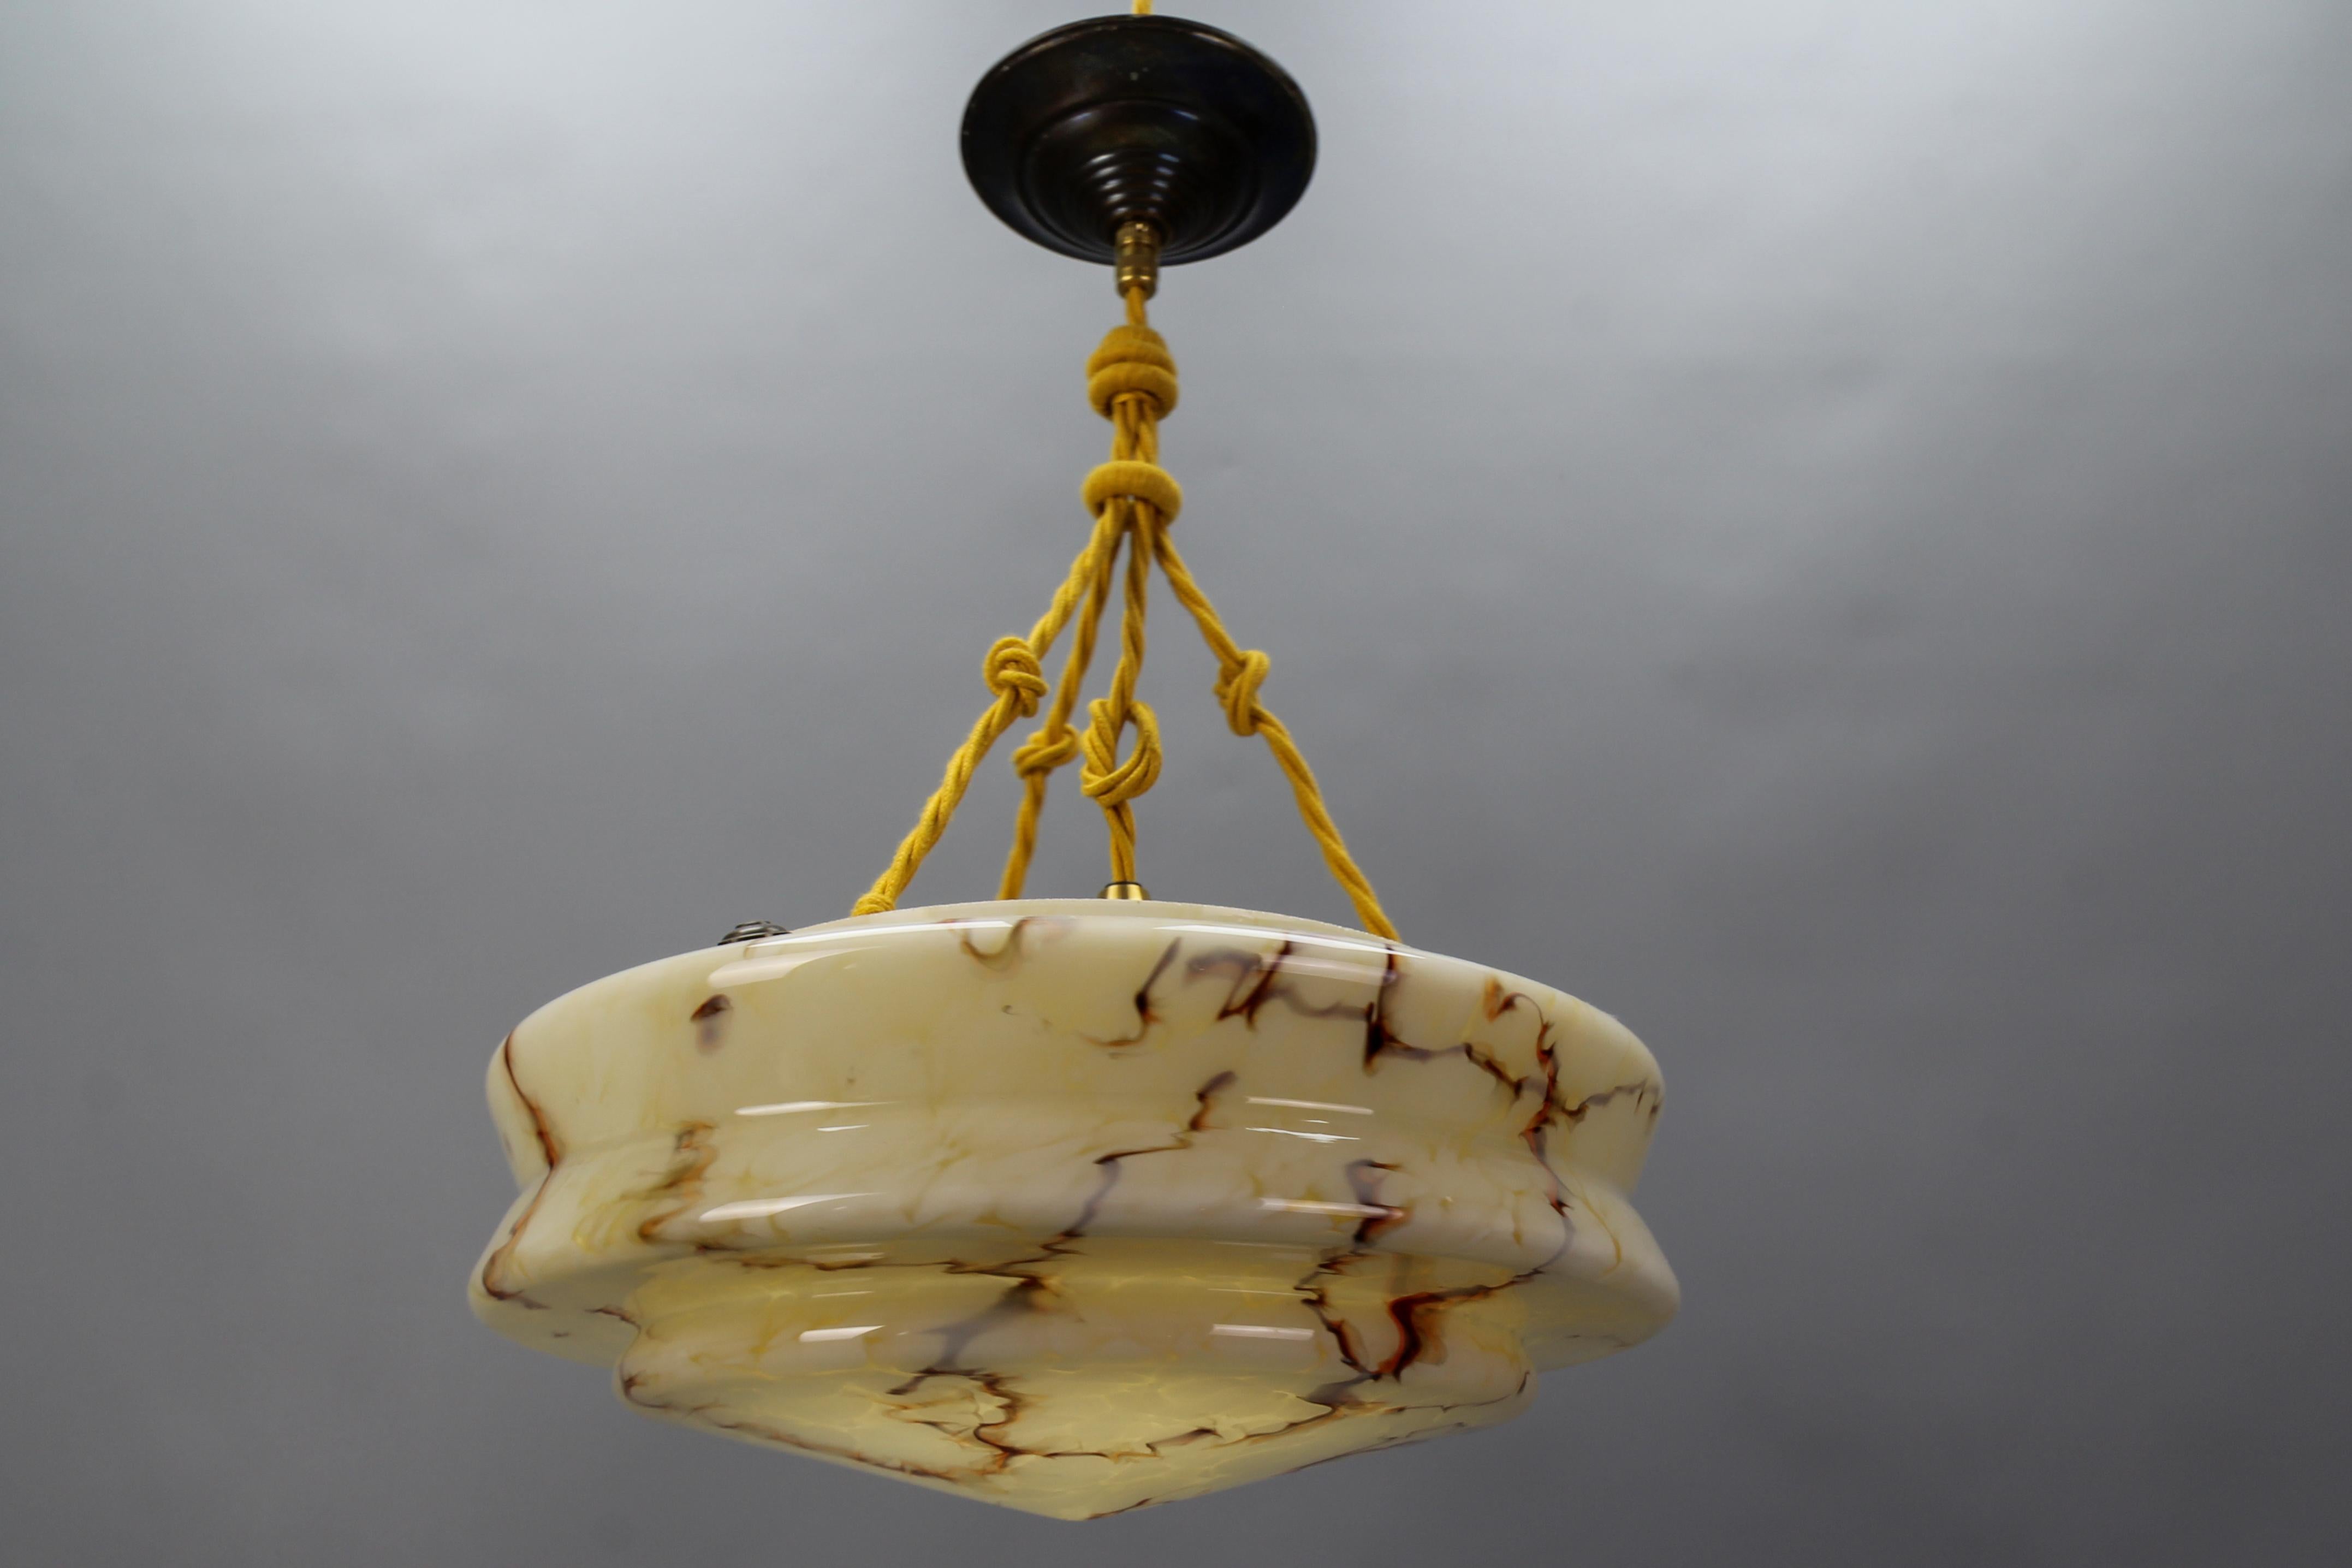 Suspension Art déco en verre marbré de couleur ambre et en laiton, datant des années 1930, Allemagne.
Ce magnifique plafonnier est doté d'un abat-jour en verre marbré - l'abat-jour mélange une base marbrée de couleur jaune foncé ou ambre avec des